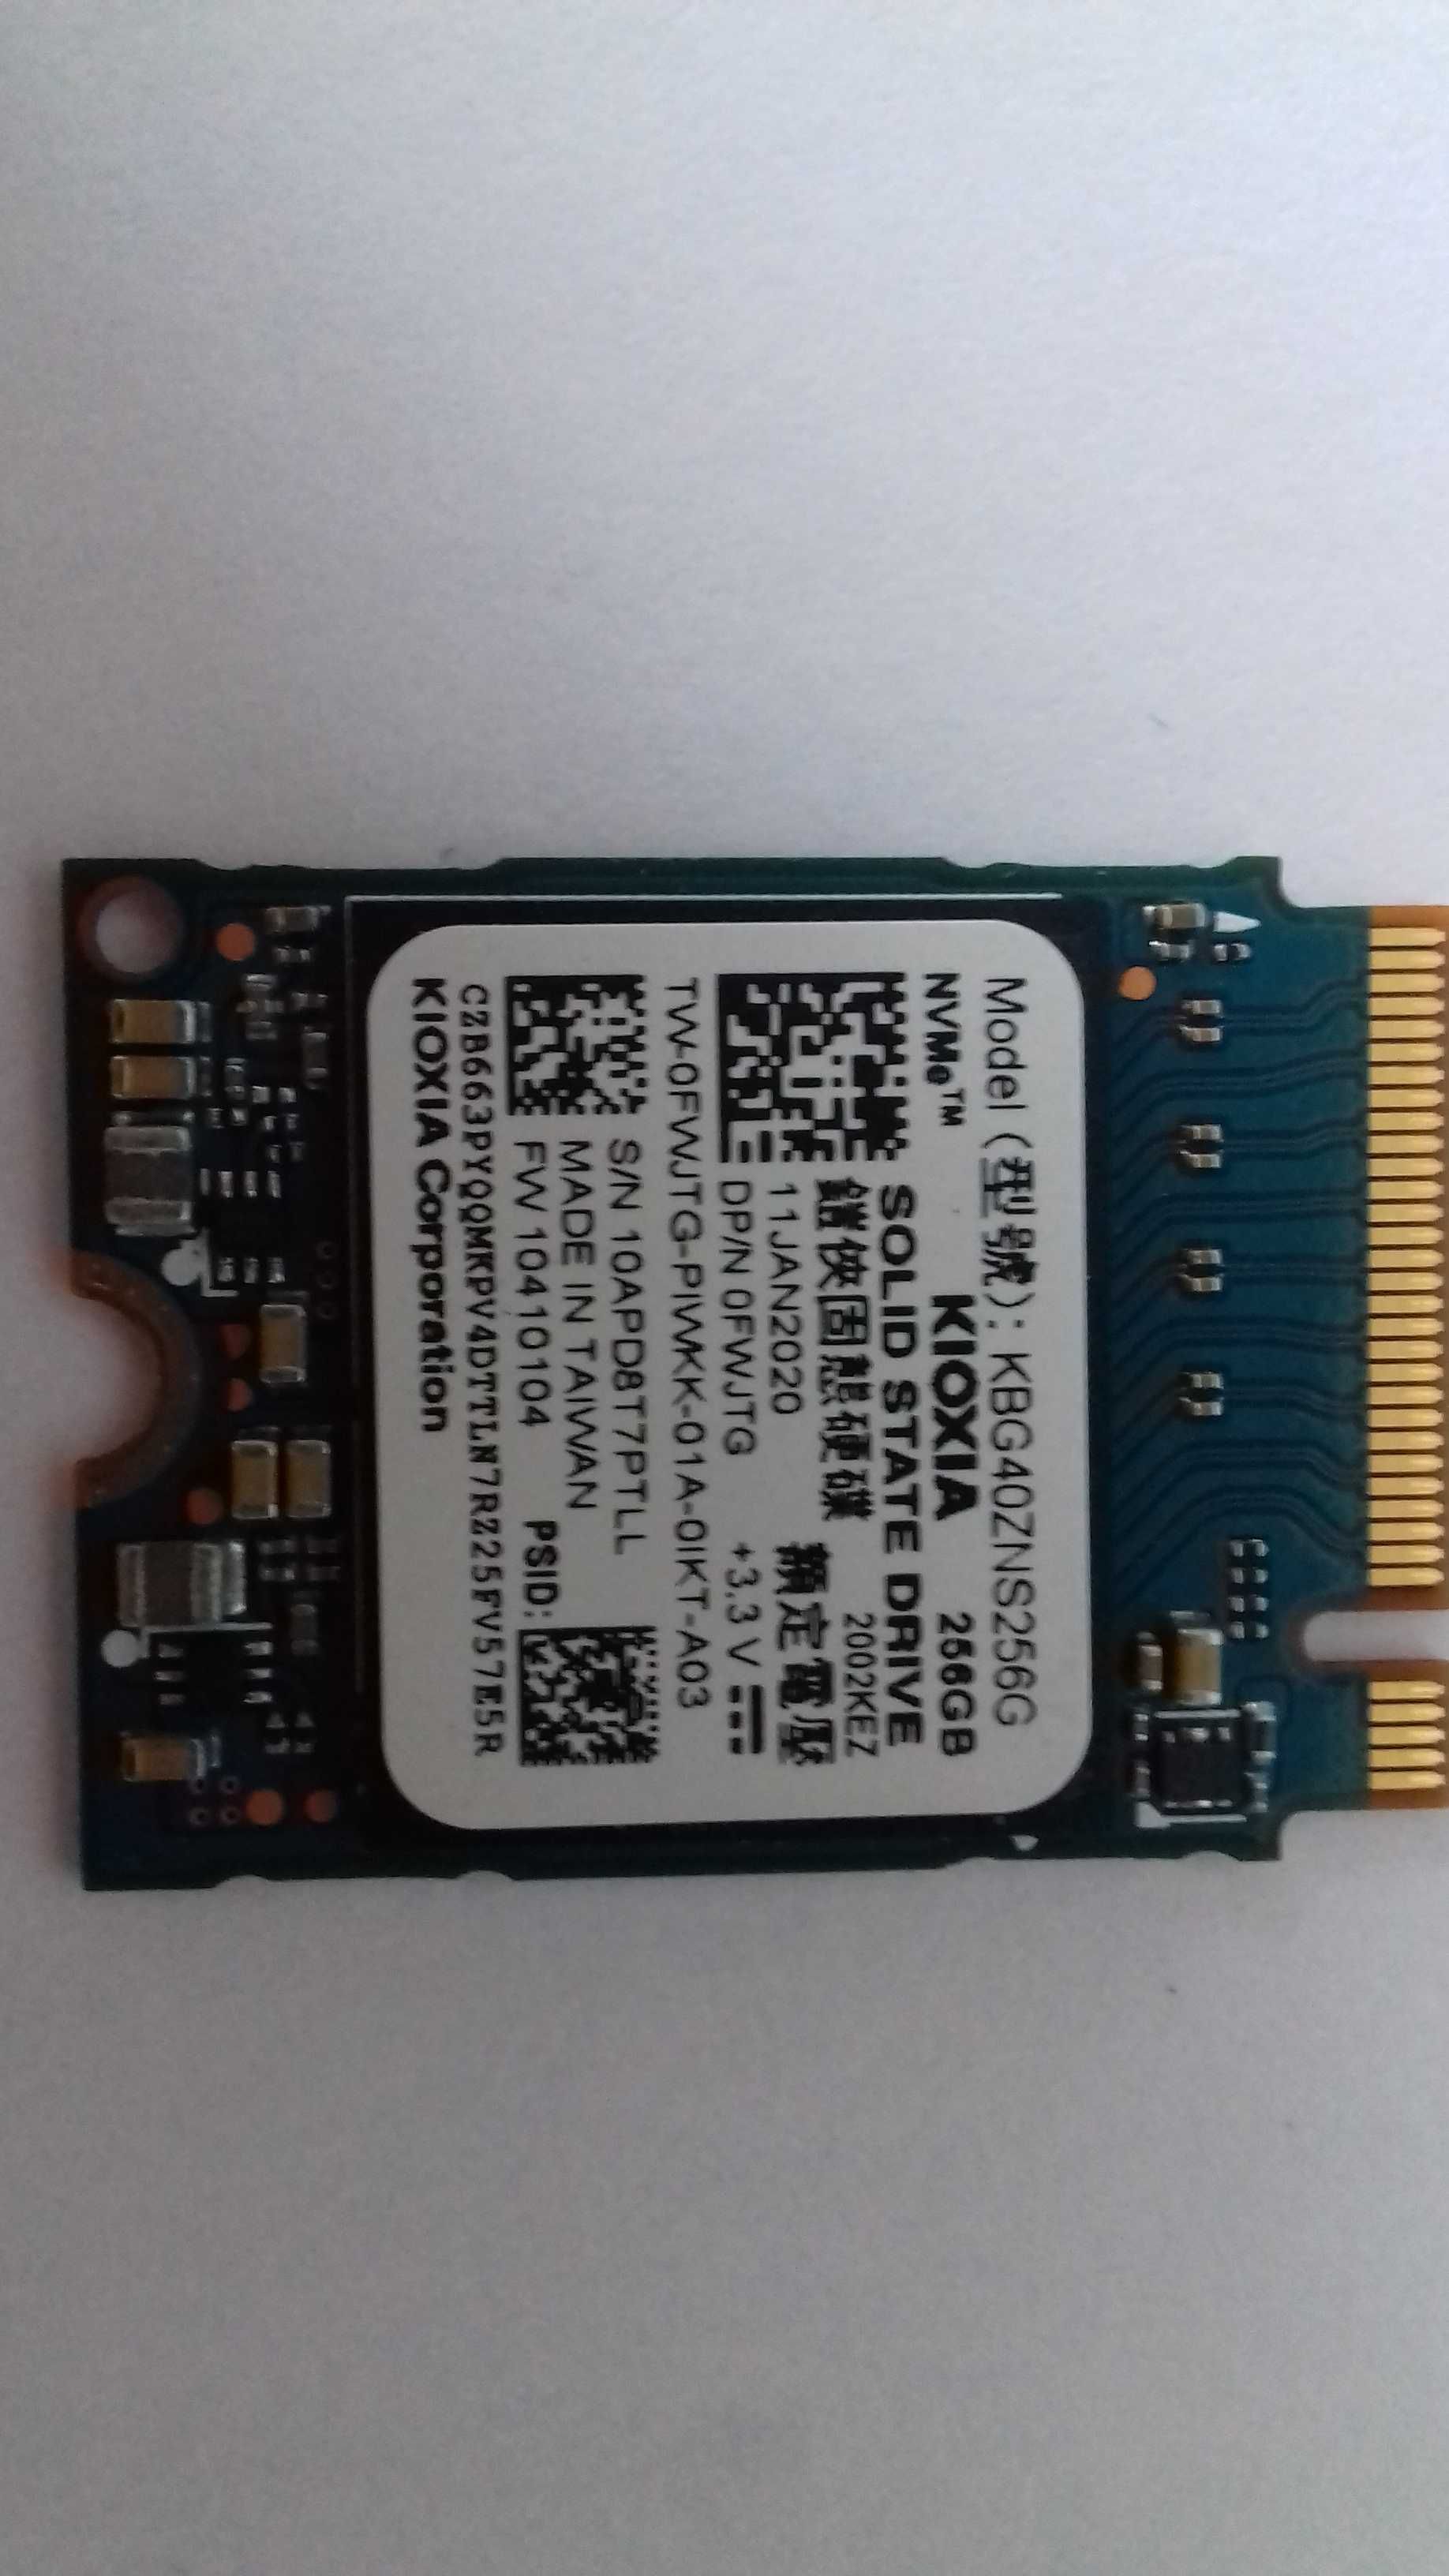 Stan idealny DYSK SSD 256GB. Różne modele-foto.Wewnętrzny.